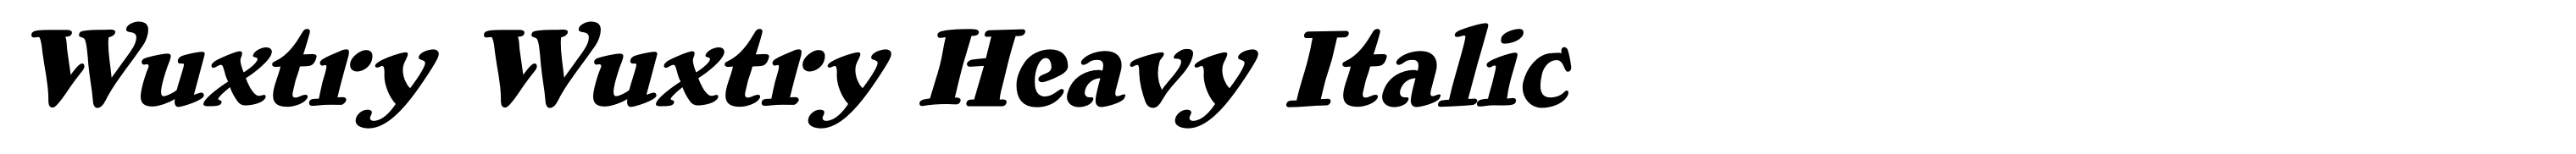 Wuxtry Wuxtry Heavy Italic